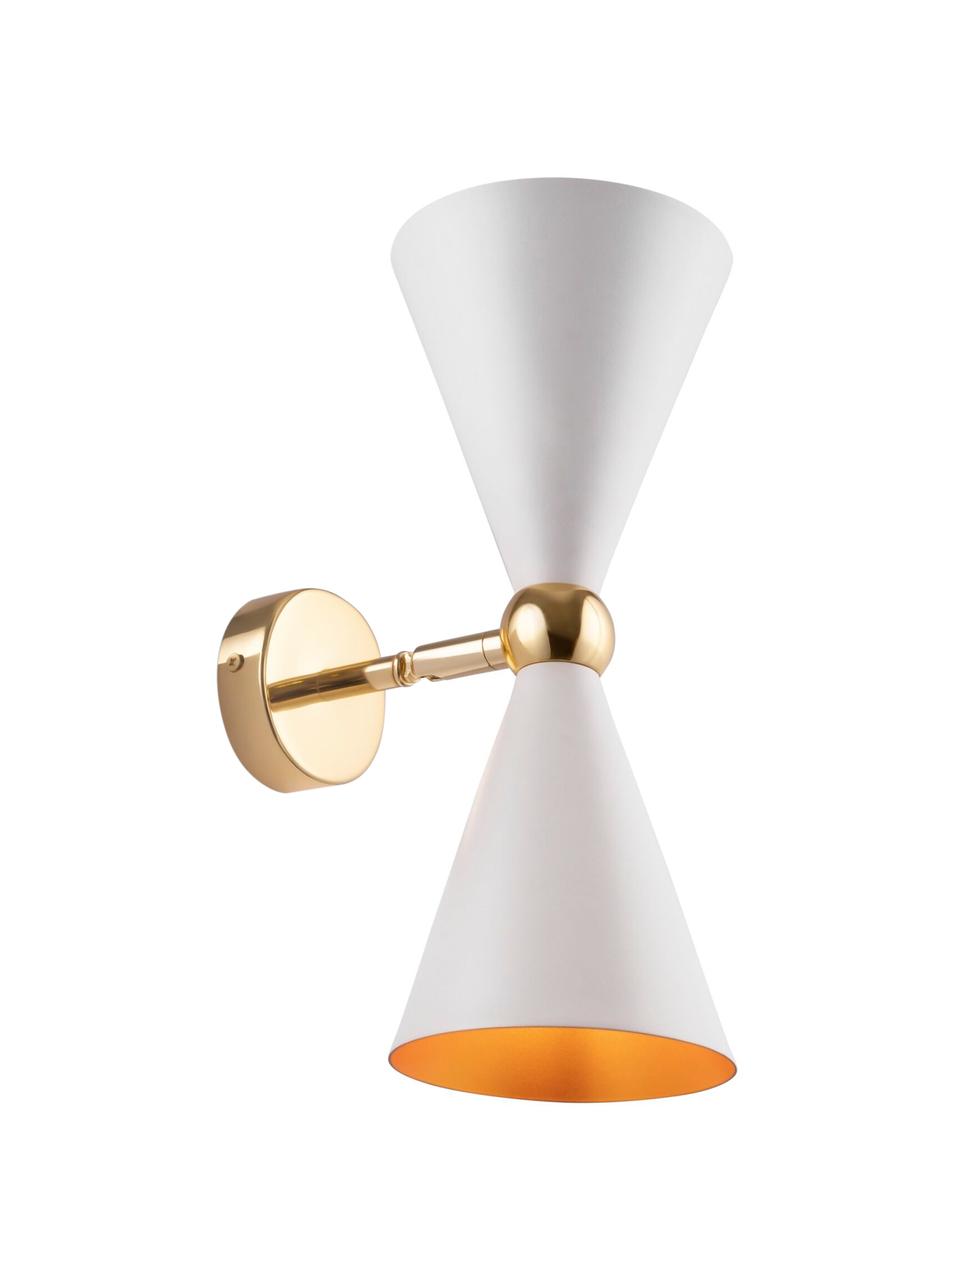 Retro wandlamp Vesper met goudkleurige decoratie, Frame: gecoat metaal, Wit, goudkleurig, D 18 x H 32 cm